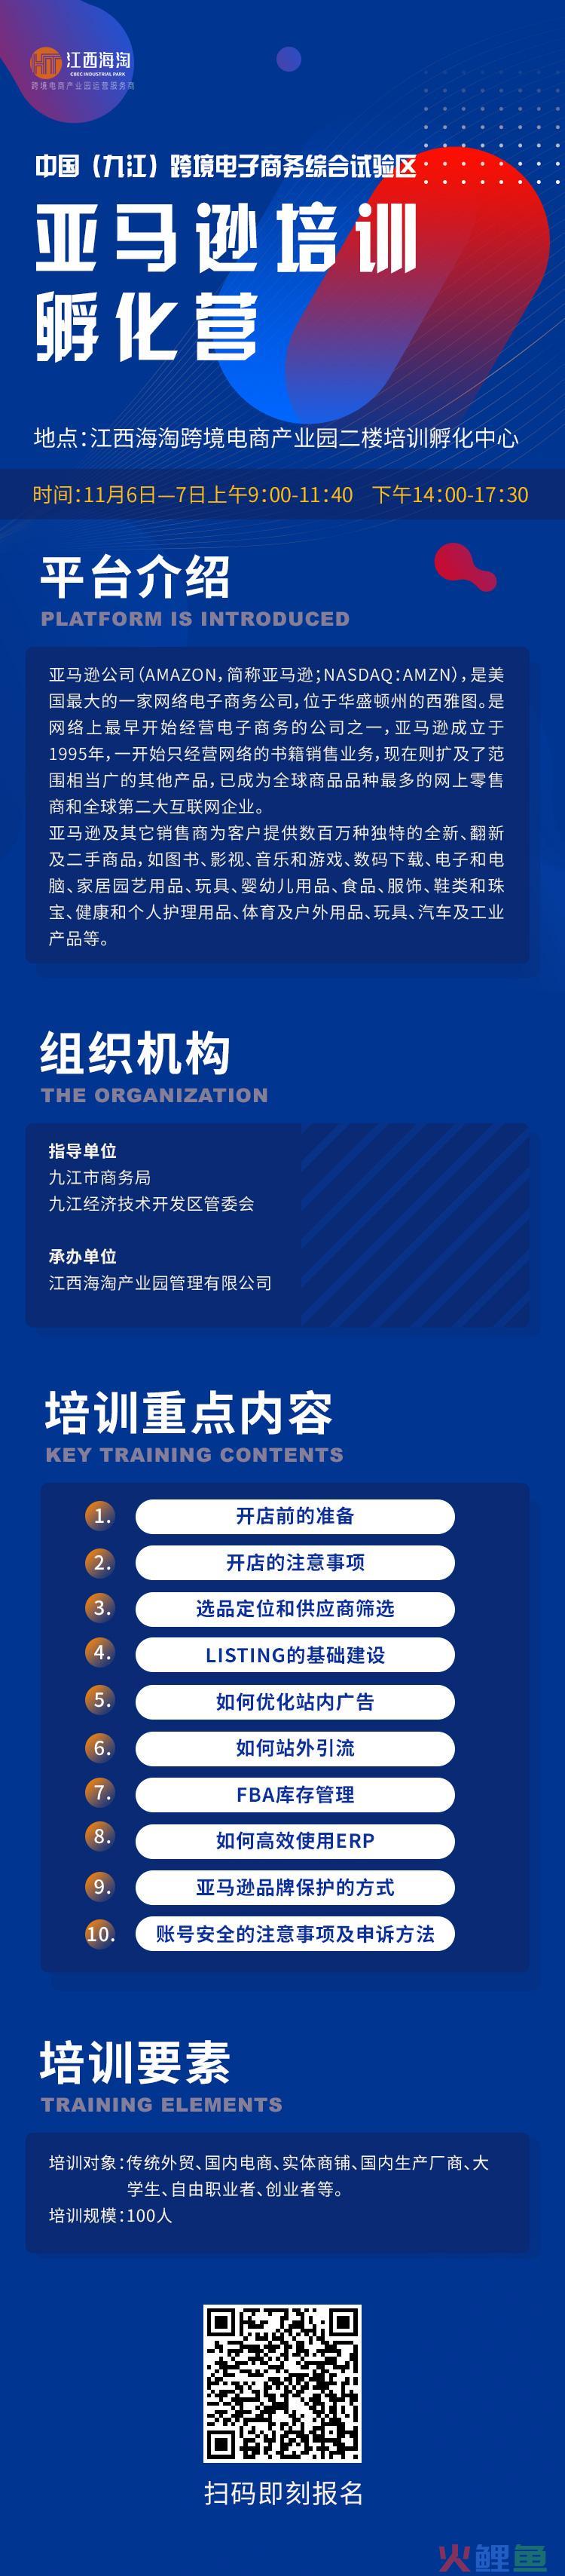 中国 九江跨境电子商务综合试验区亚马逊培训孵化营开始报名(跨境电商培训学校)